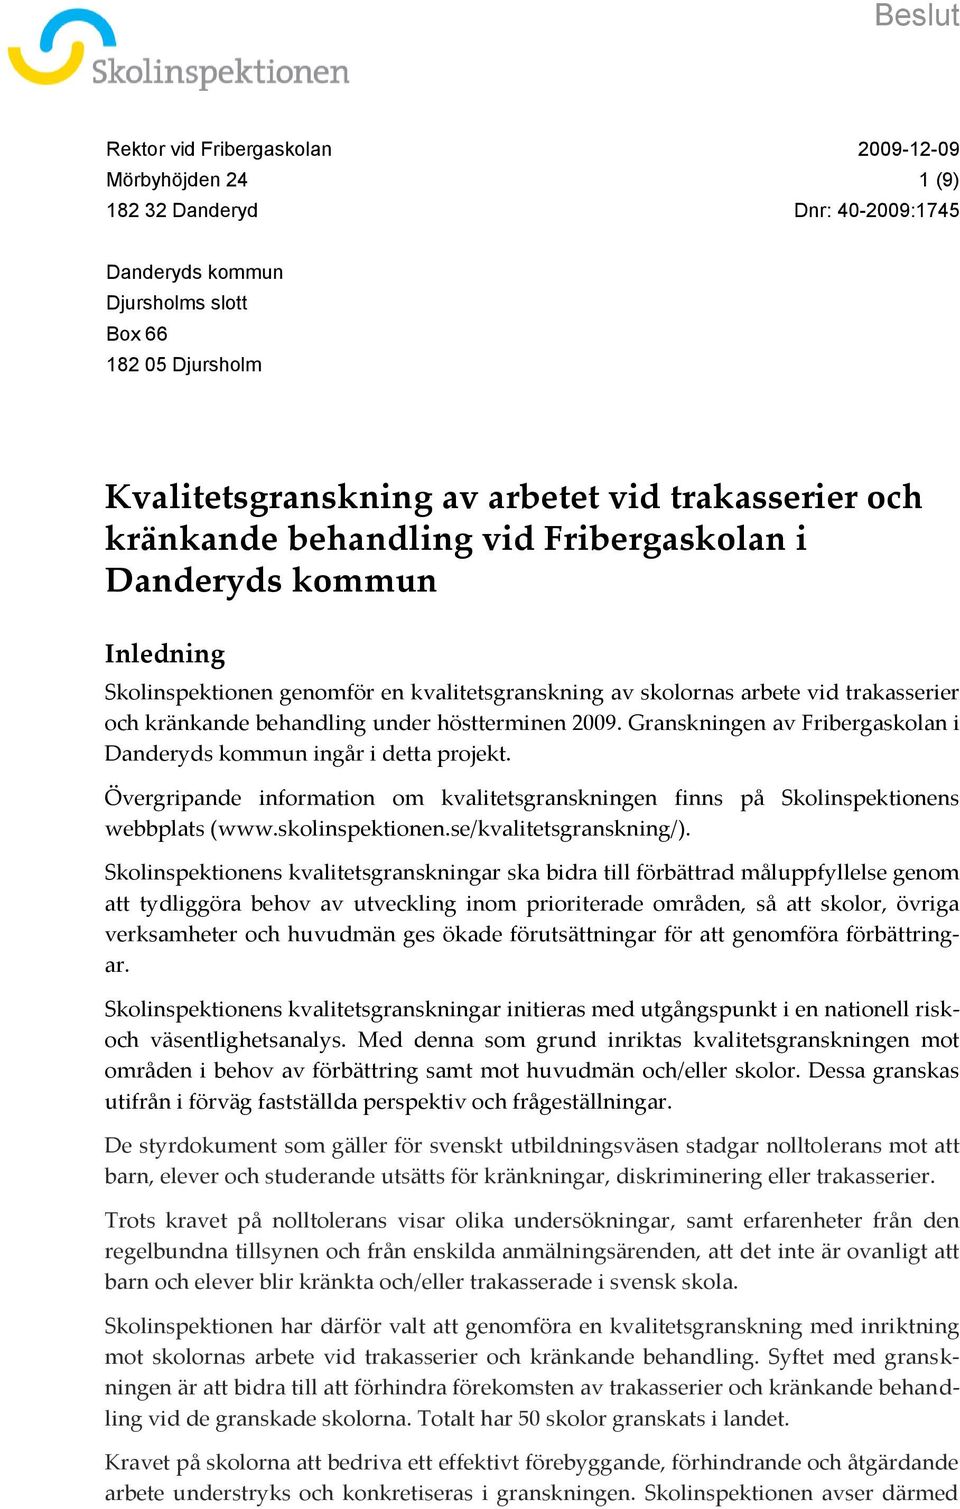 Granskningen av Fribergaskolan i Danderyds kommun ingår i detta projekt. Övergripande information om kvalitetsgranskningen finns på Skolinspektionens webbplats (www.skolinspektionen.